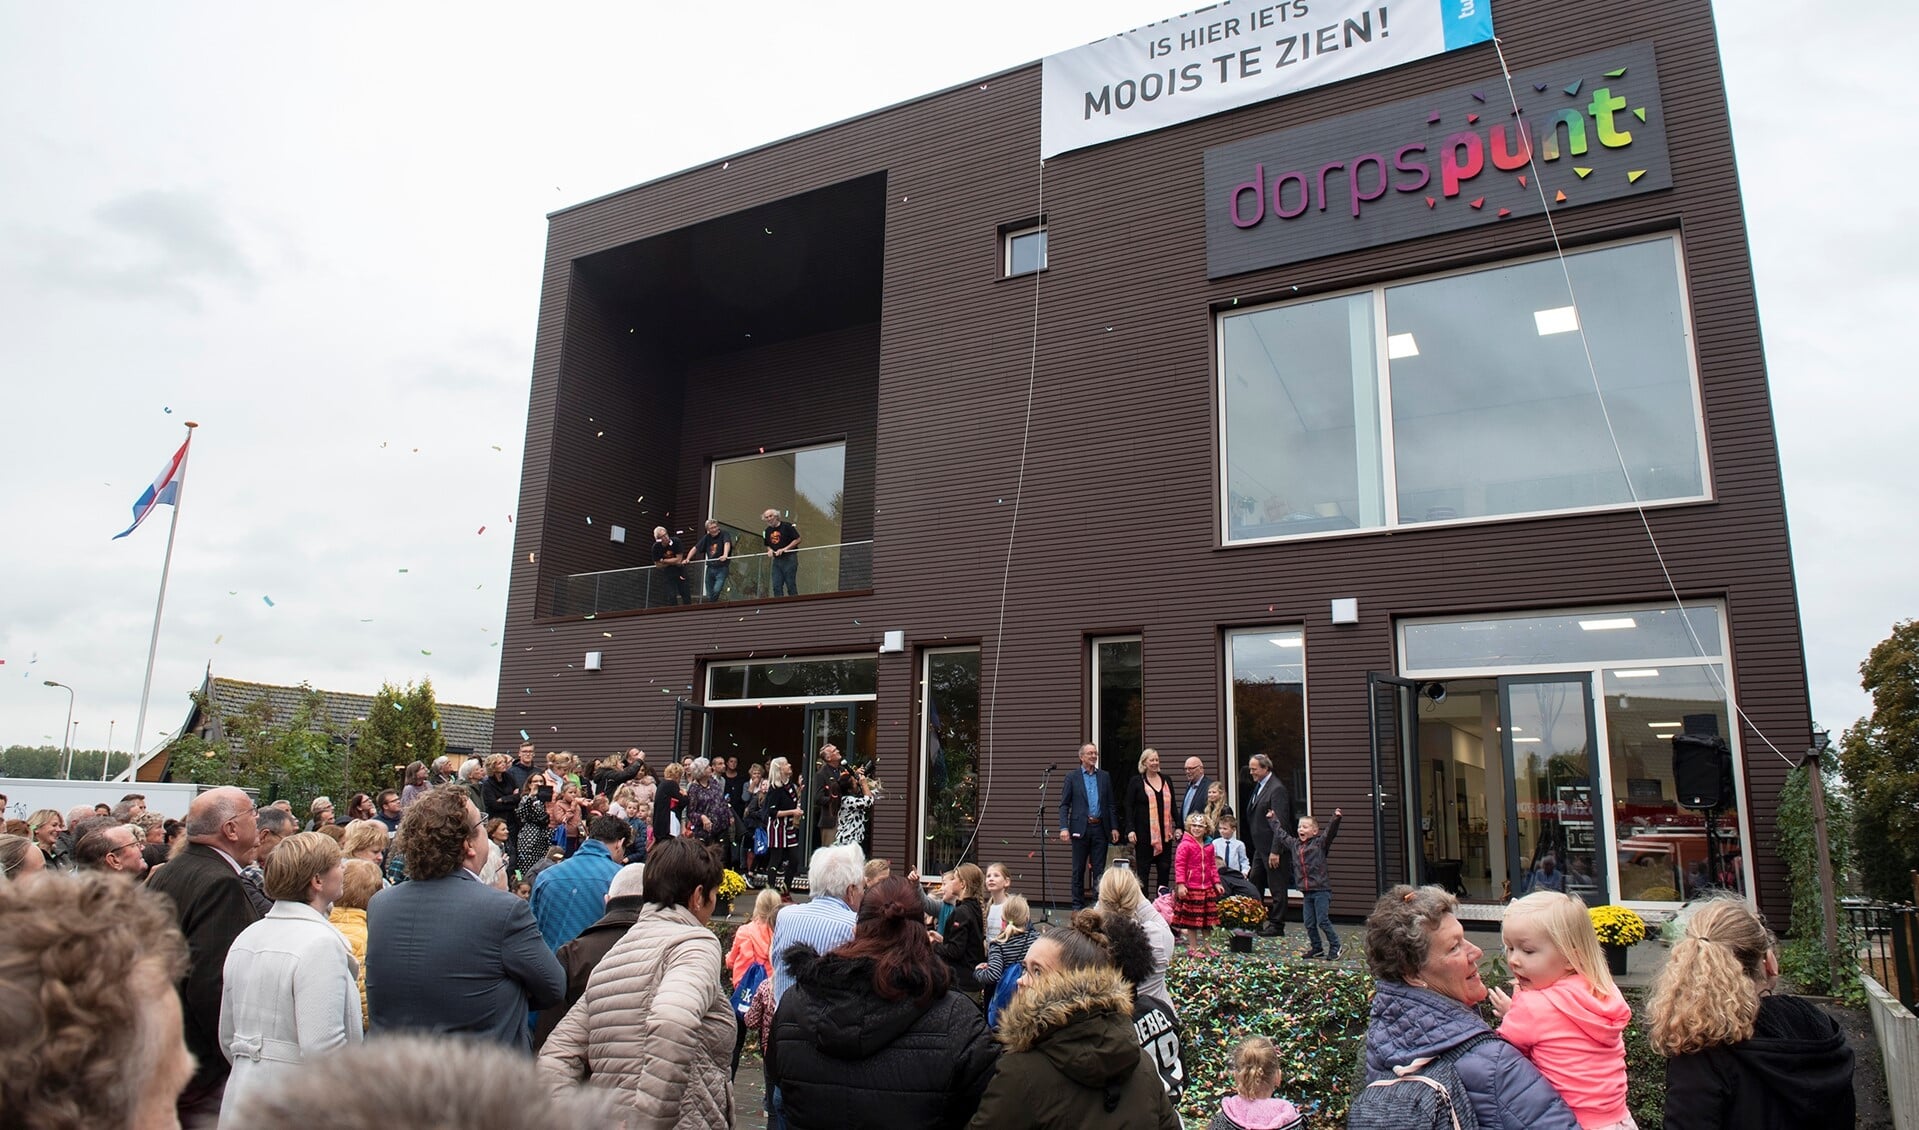 Onthulling van de nieuwe naam Dorpspunt op het Kulturhus (foto's: Michel Groen).